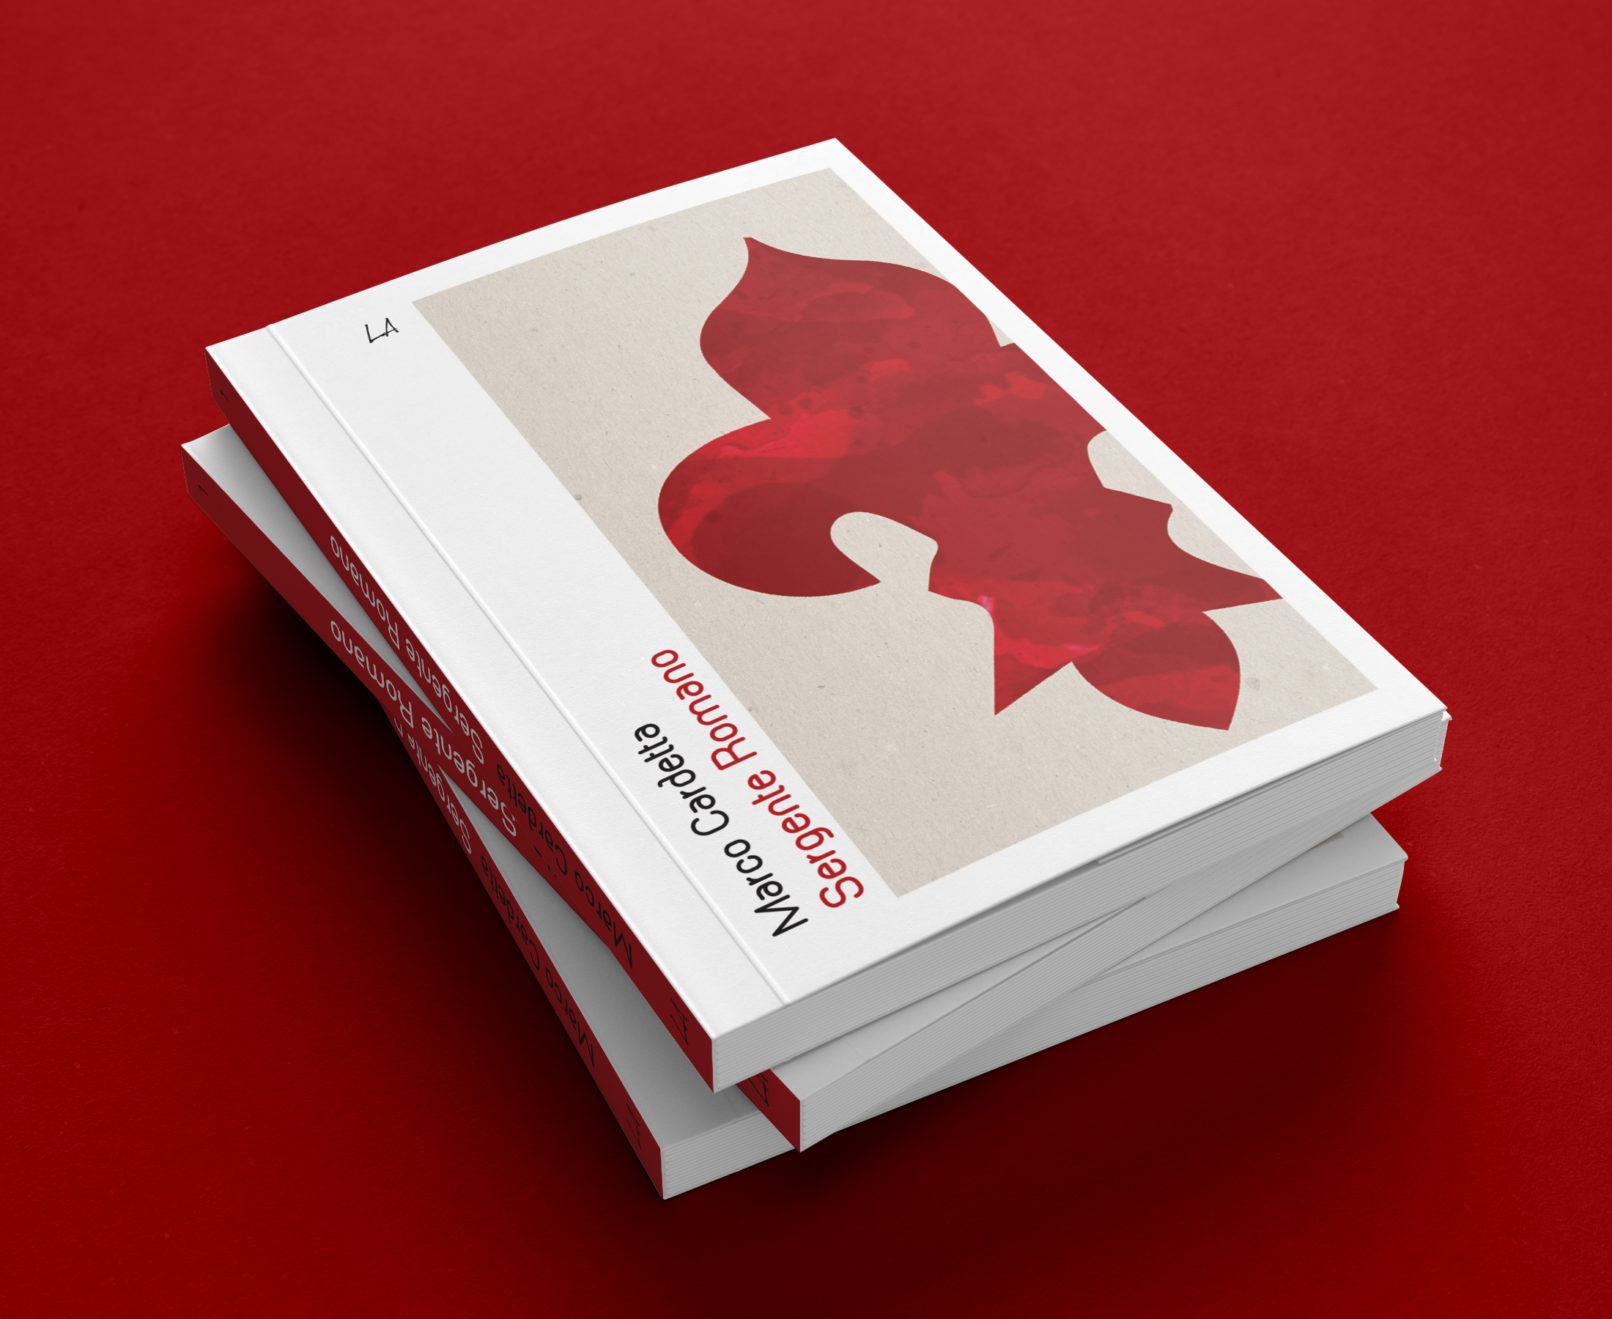 COLLANA PENNE | book cover design